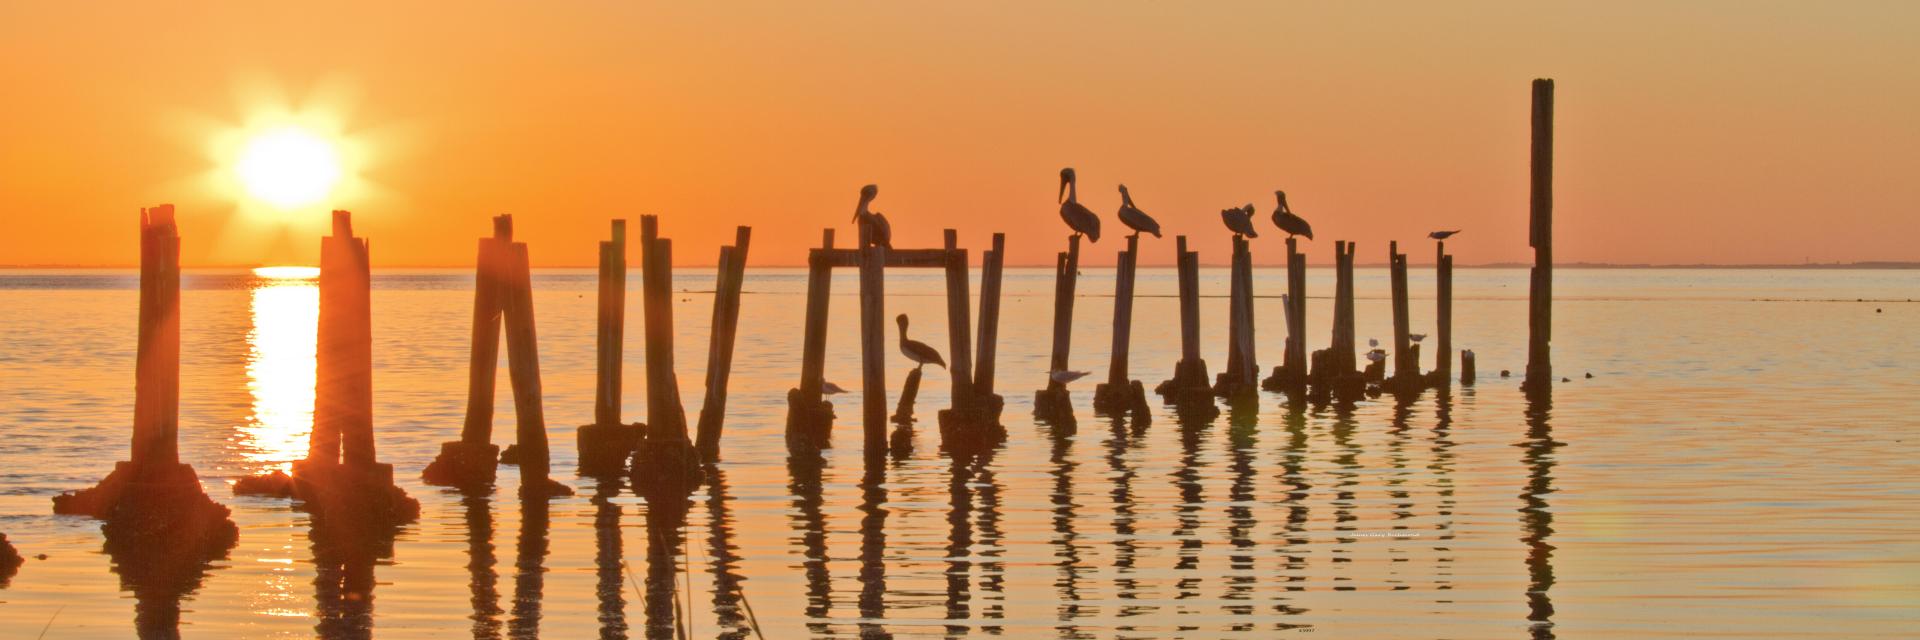 43997p pelicans in sunset, old dock posts,,.jpg